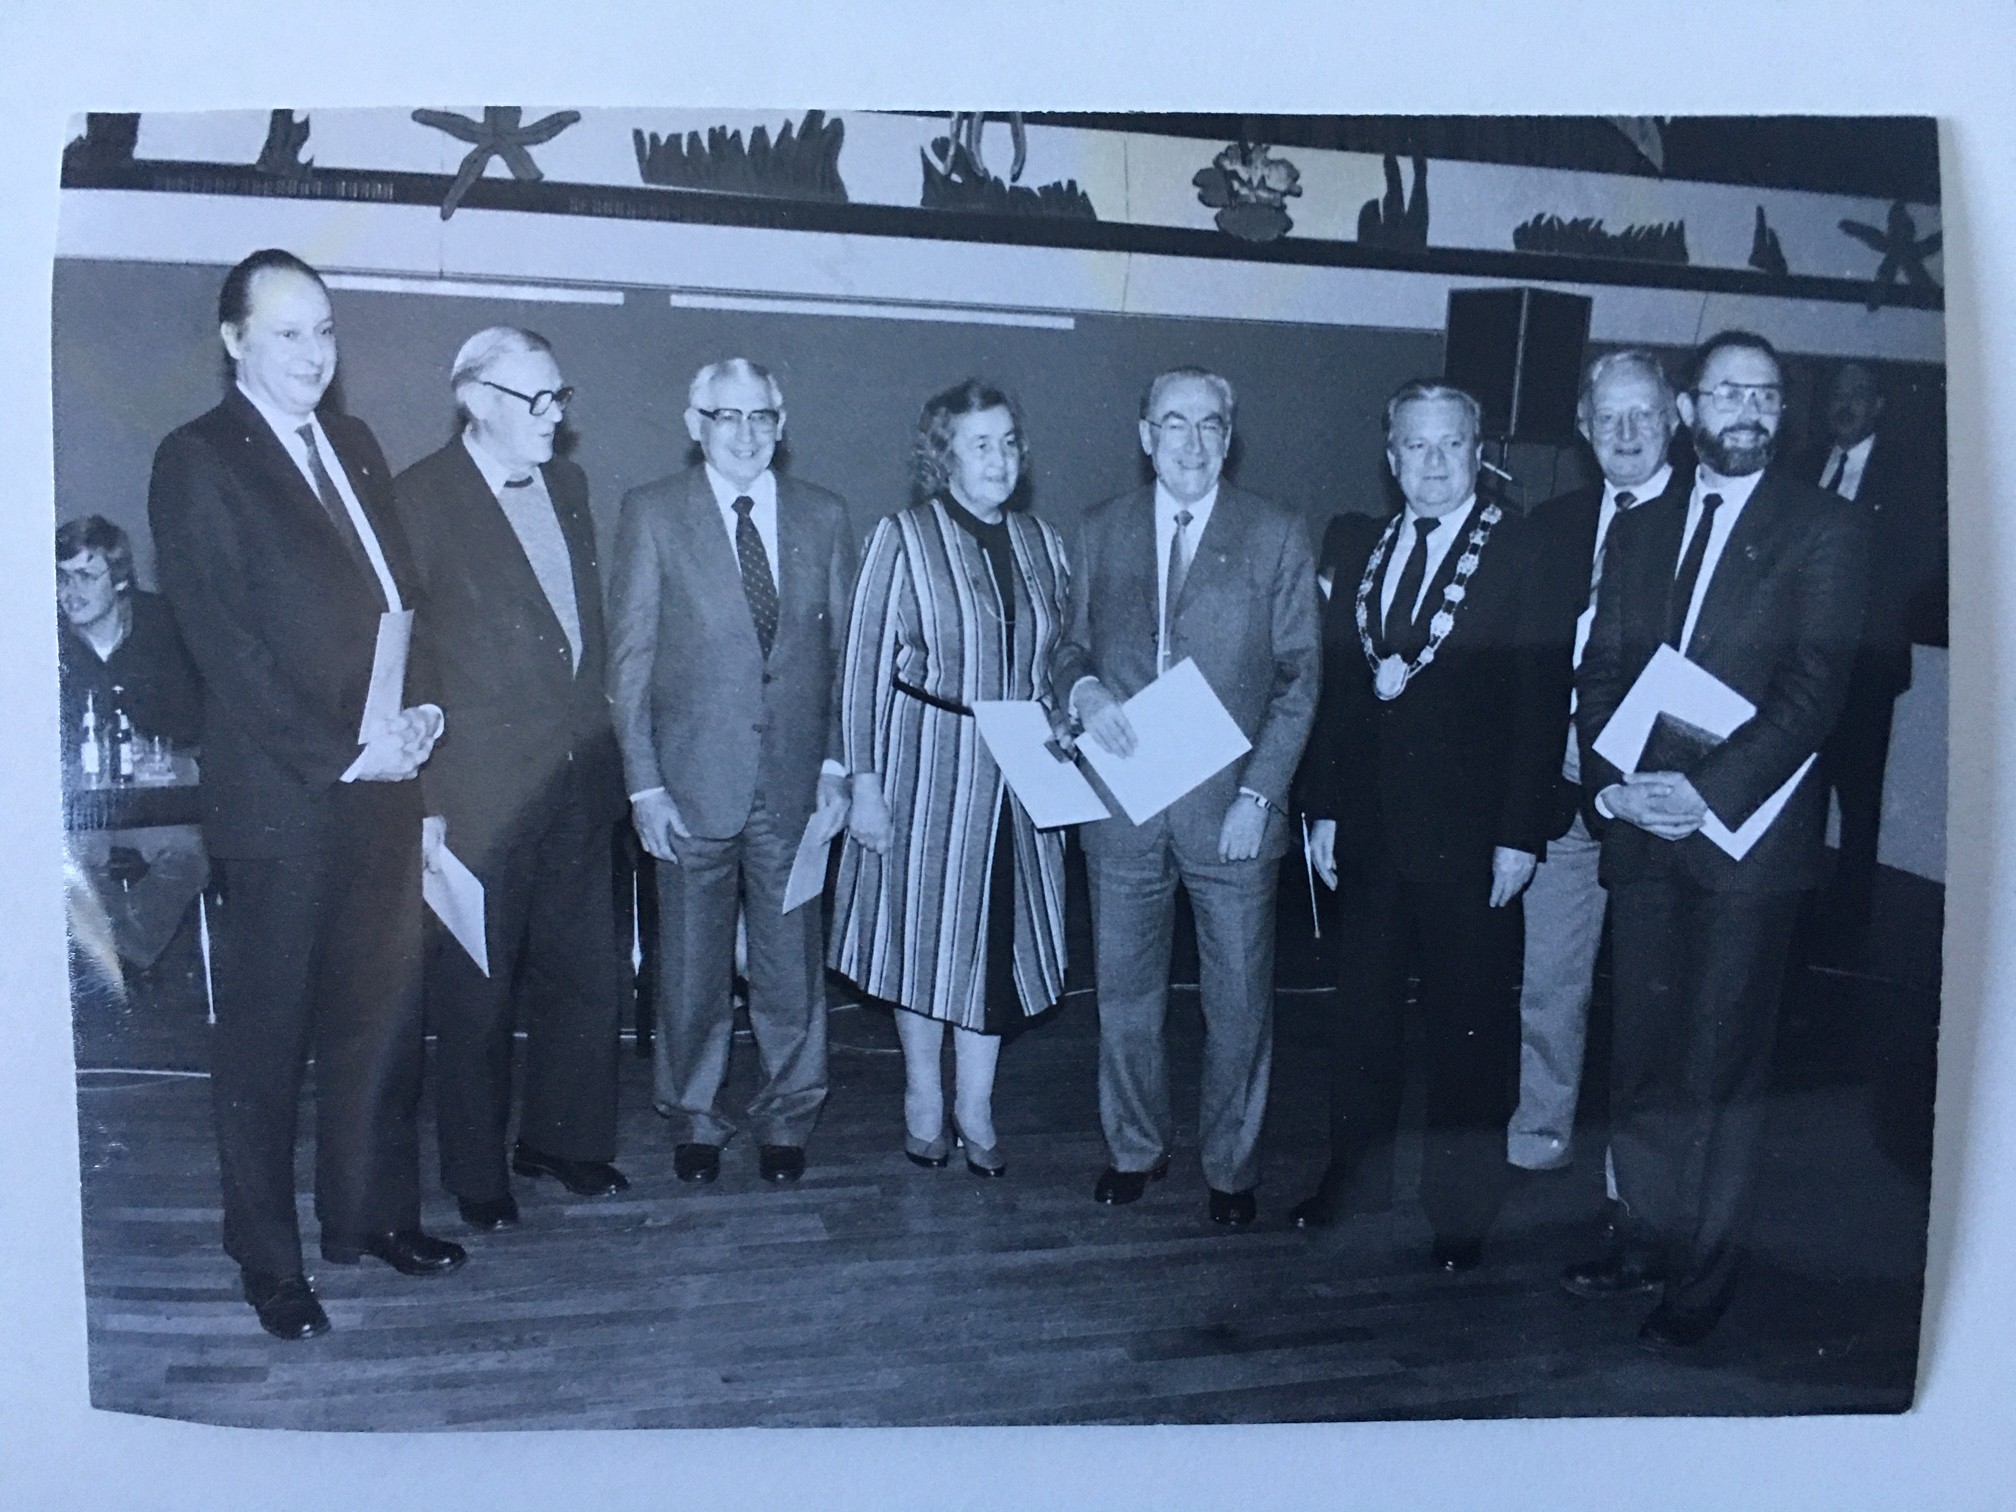 Verleihung der Bronzenen Verdienstmedaille an Dr. Jochen Schwalbe (FDP) in der Stadtverordnetenversammlung Steinbach am 28.1.1985 (Taunus-Rhein-Main - Regionalgeschichtliche Sammlung Dr. Stefan Naas CC BY-NC-SA)